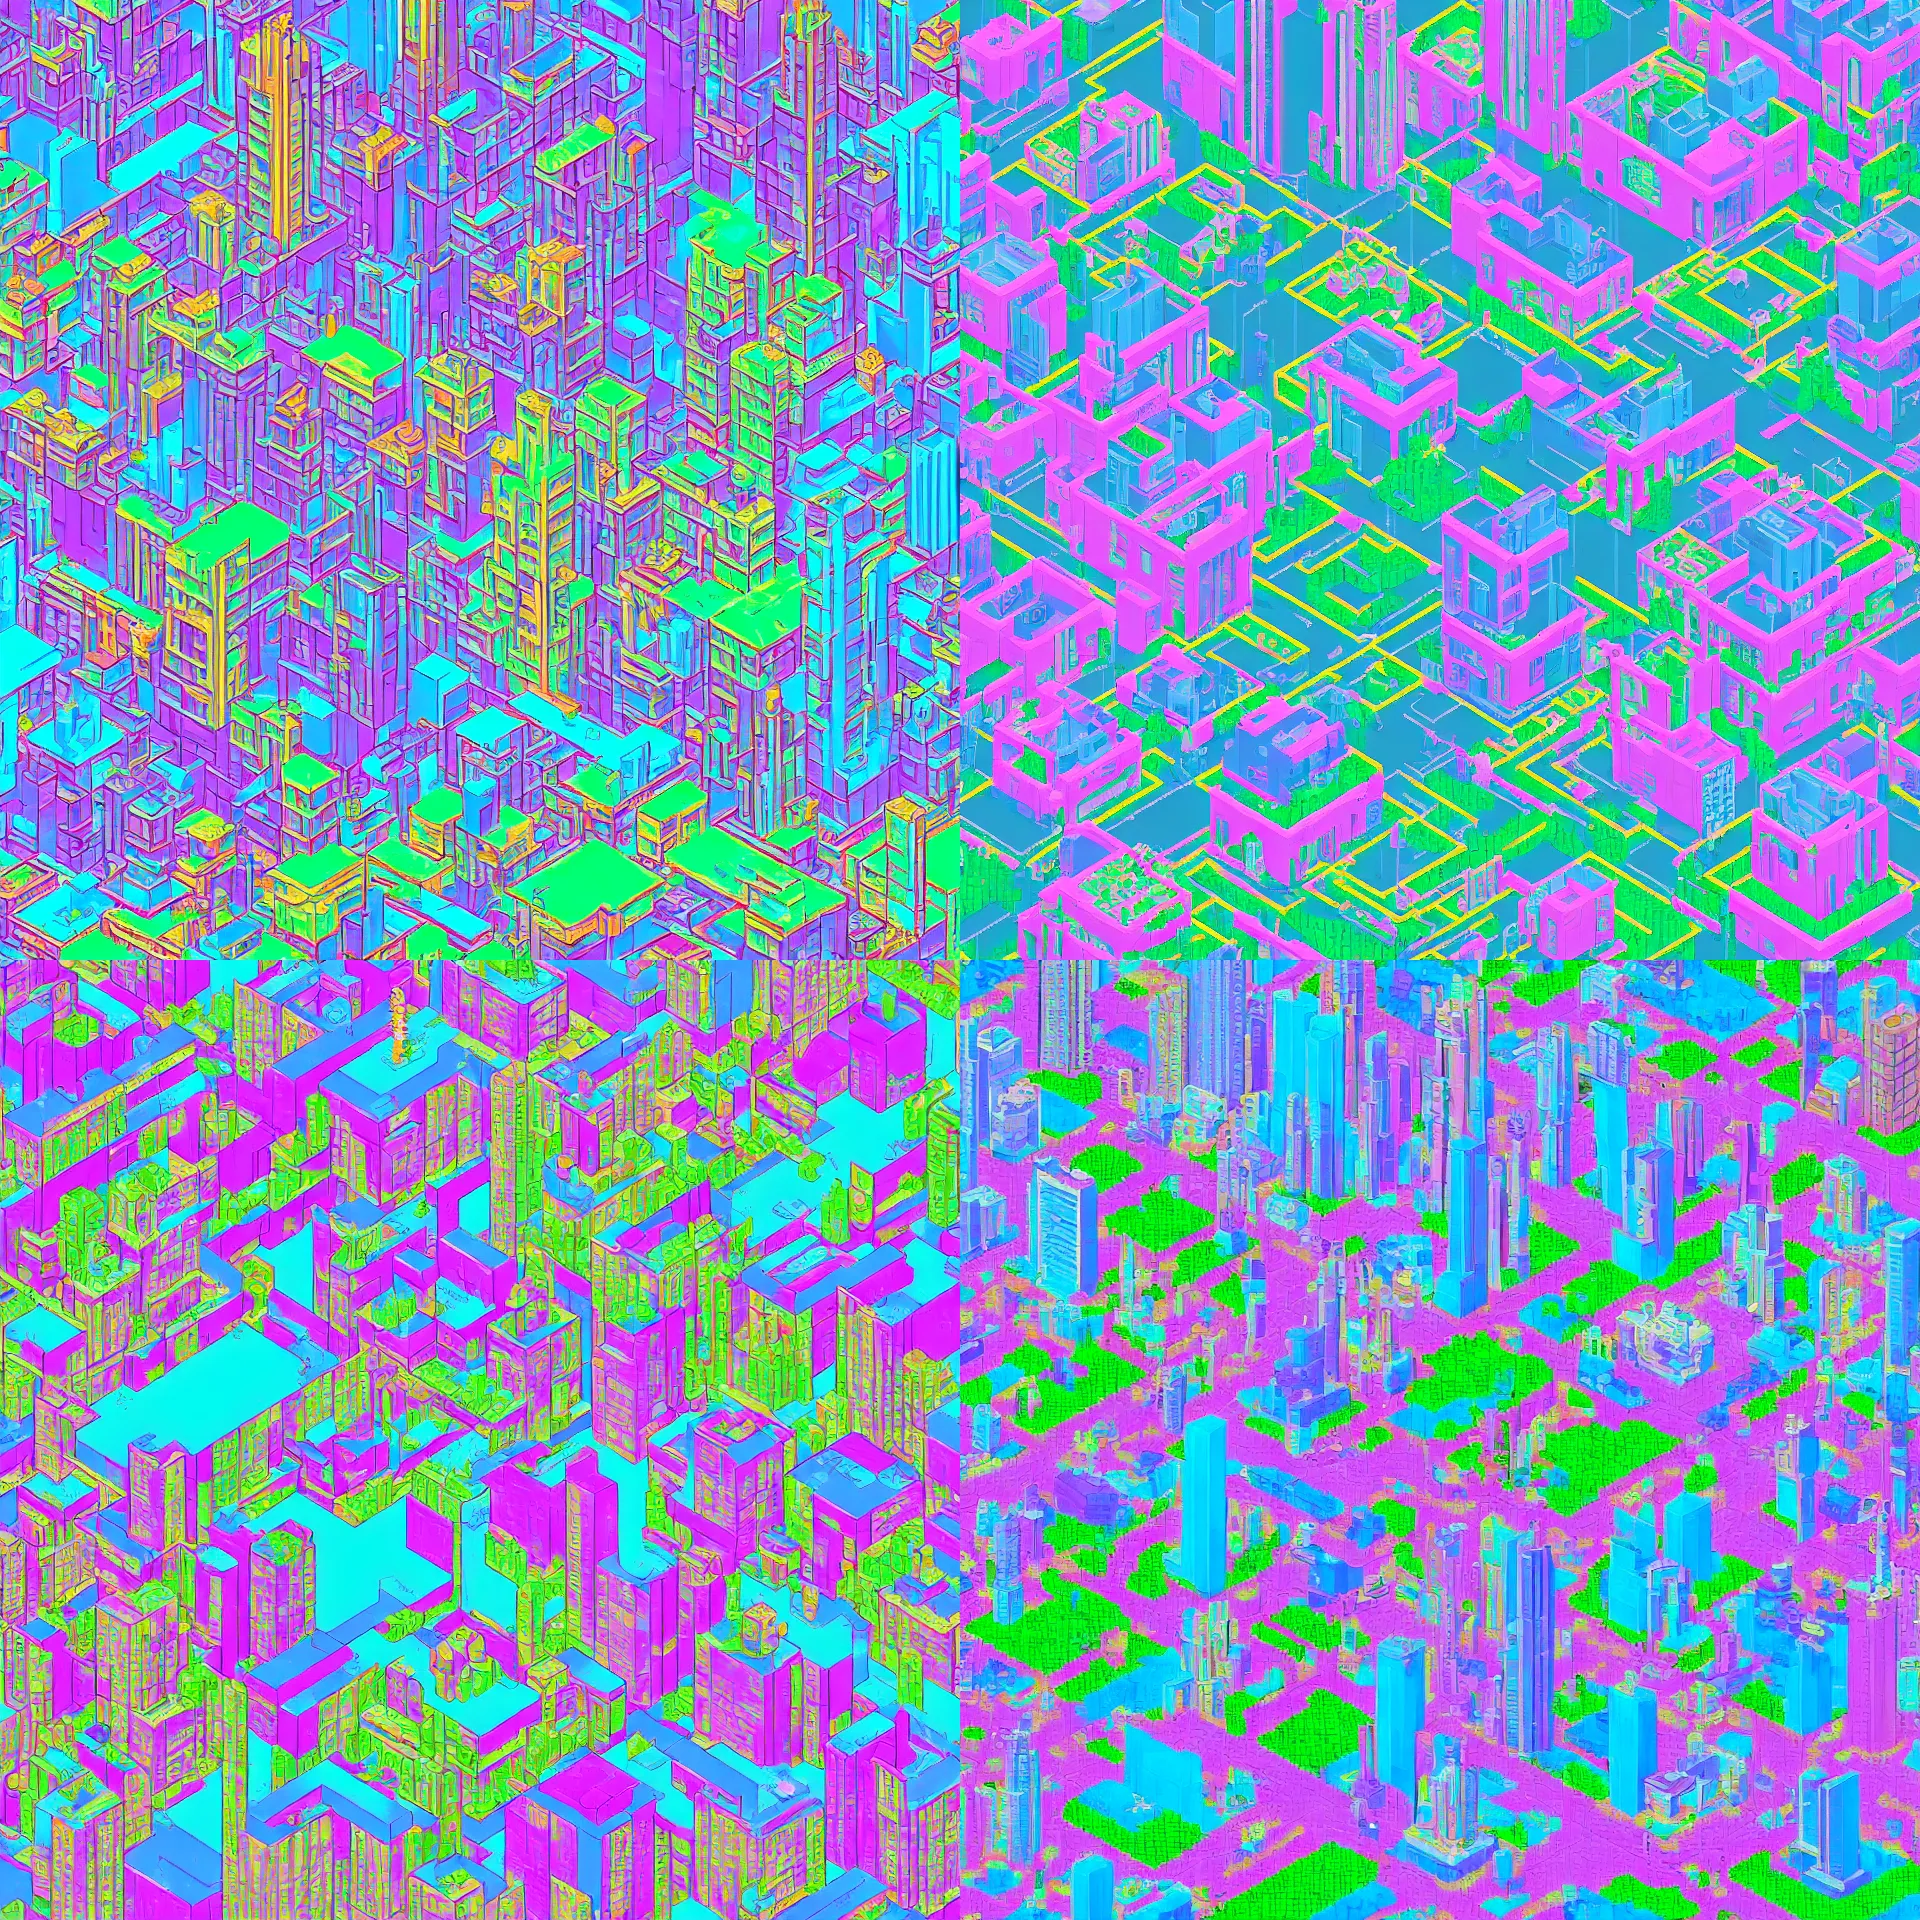 Prompt: vaporwave city, stylized as pixel art, # pixelart